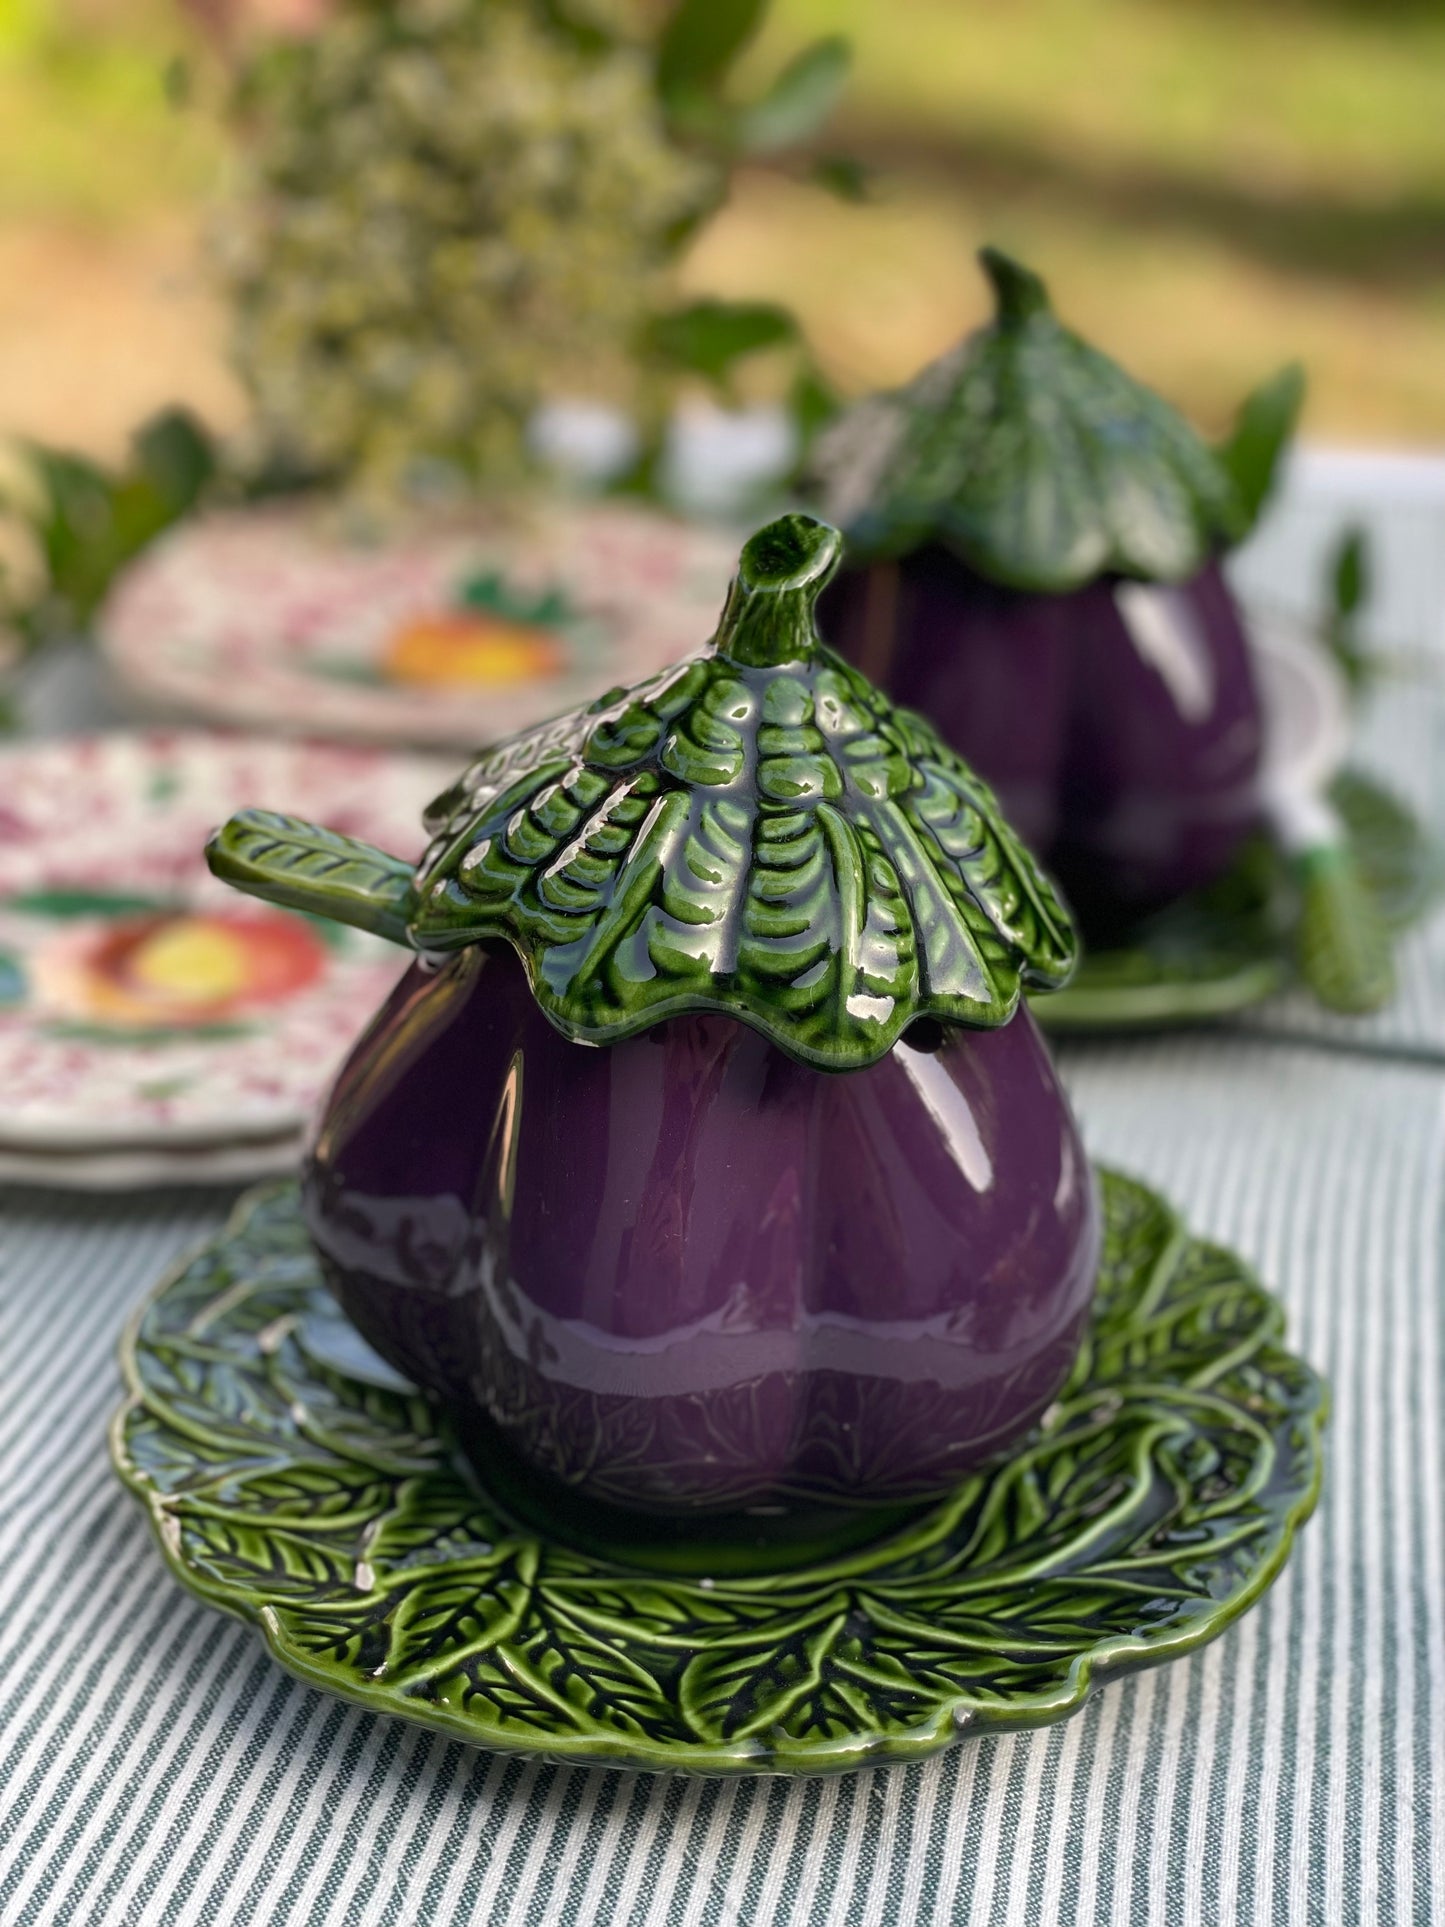 Grand confiturier/sucrier aubergine